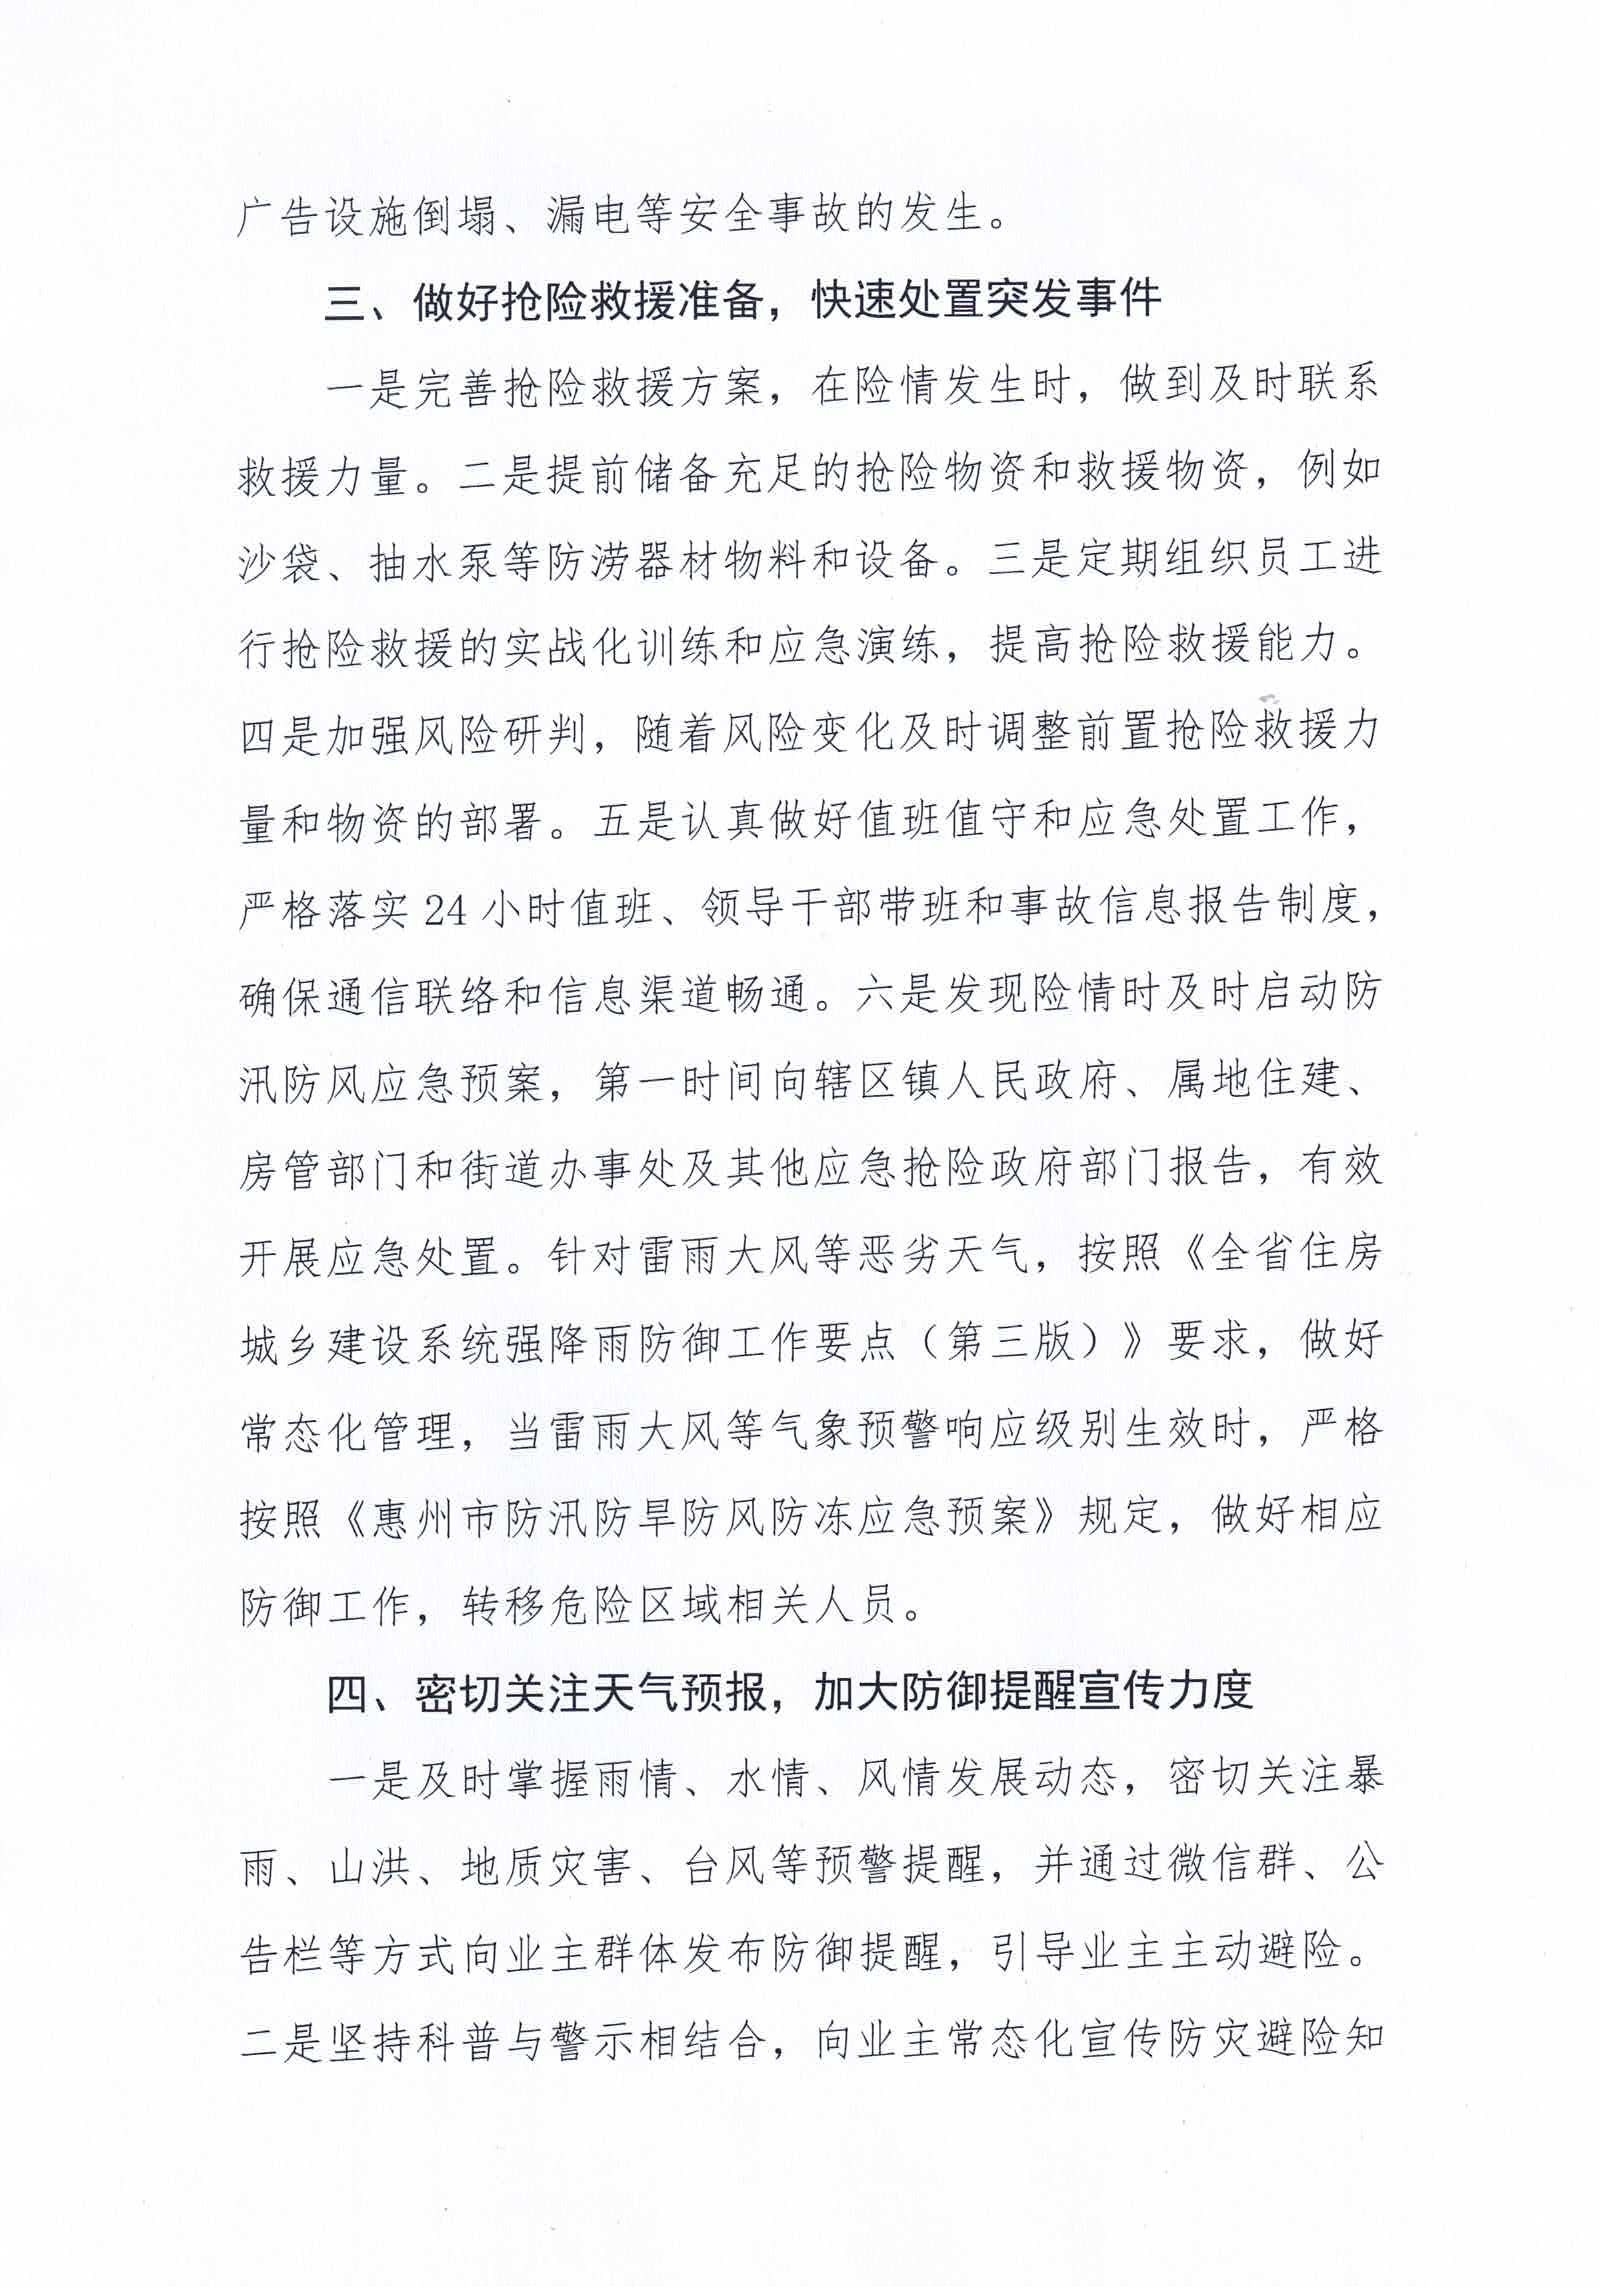 关于做好当前惠州市物业管理区域内防汛防旱防风防冻应急预案工作的紧急通知_02.png